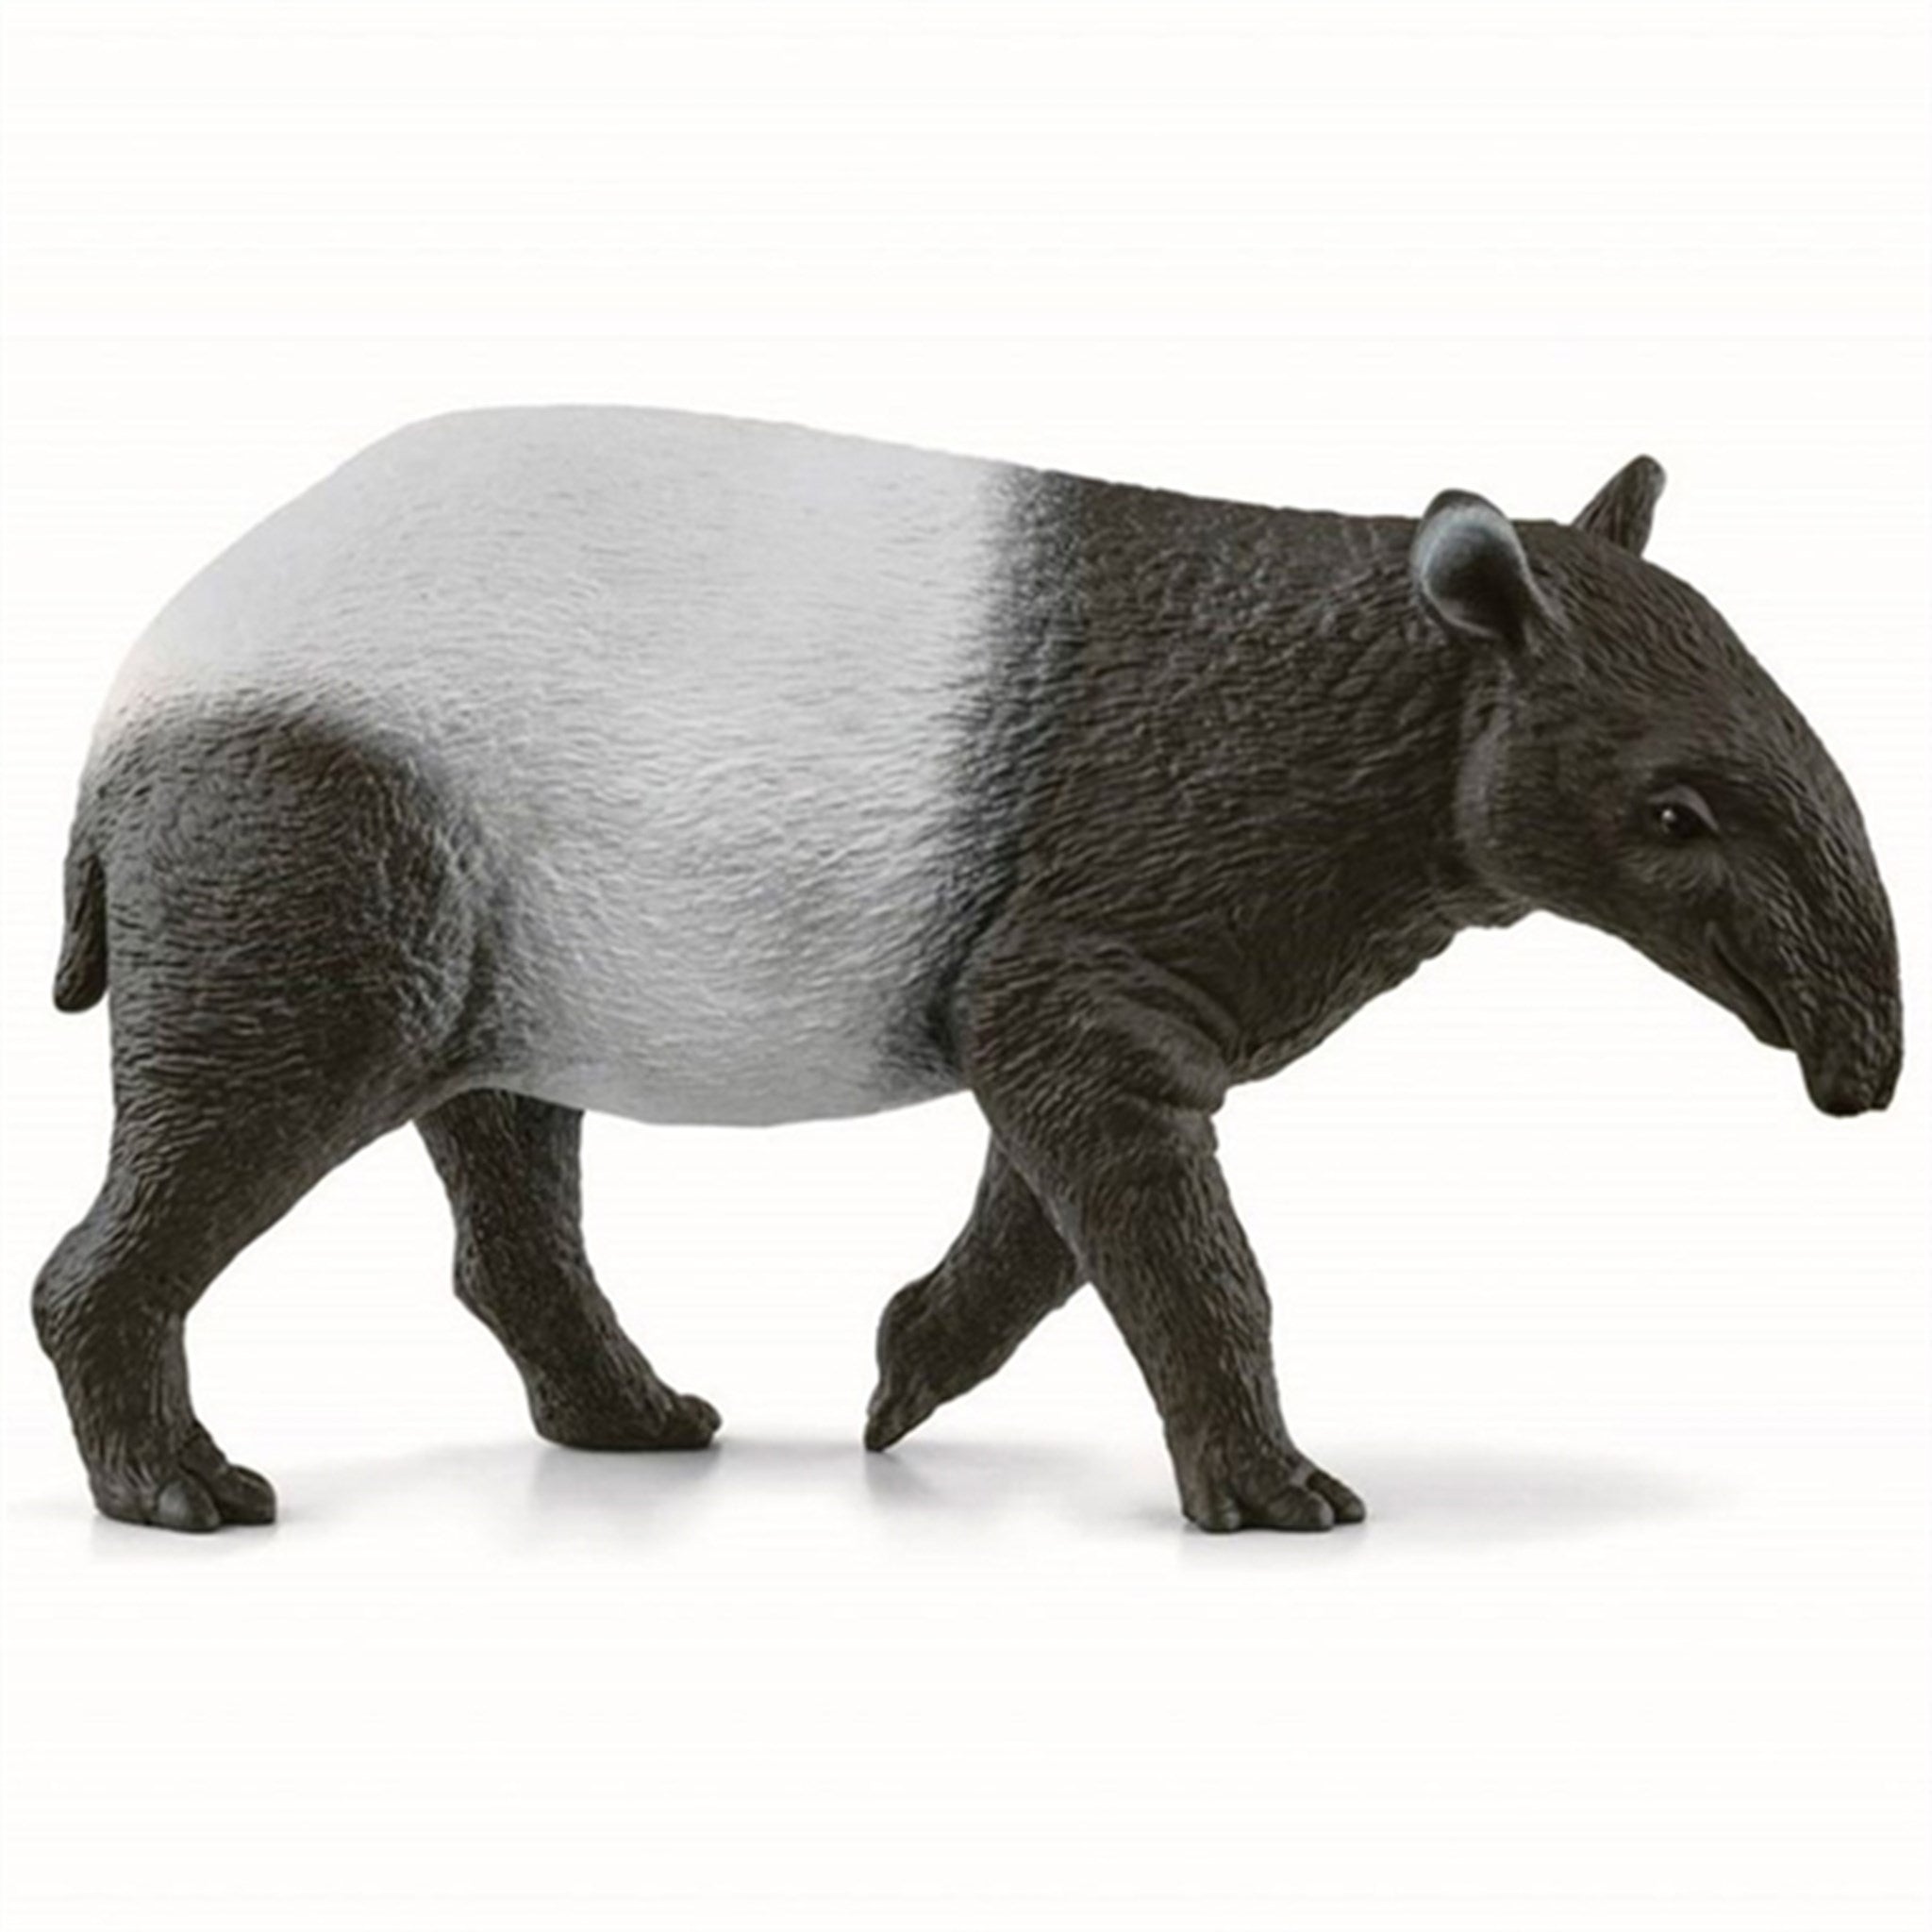 Schleich Wild Life Tapir